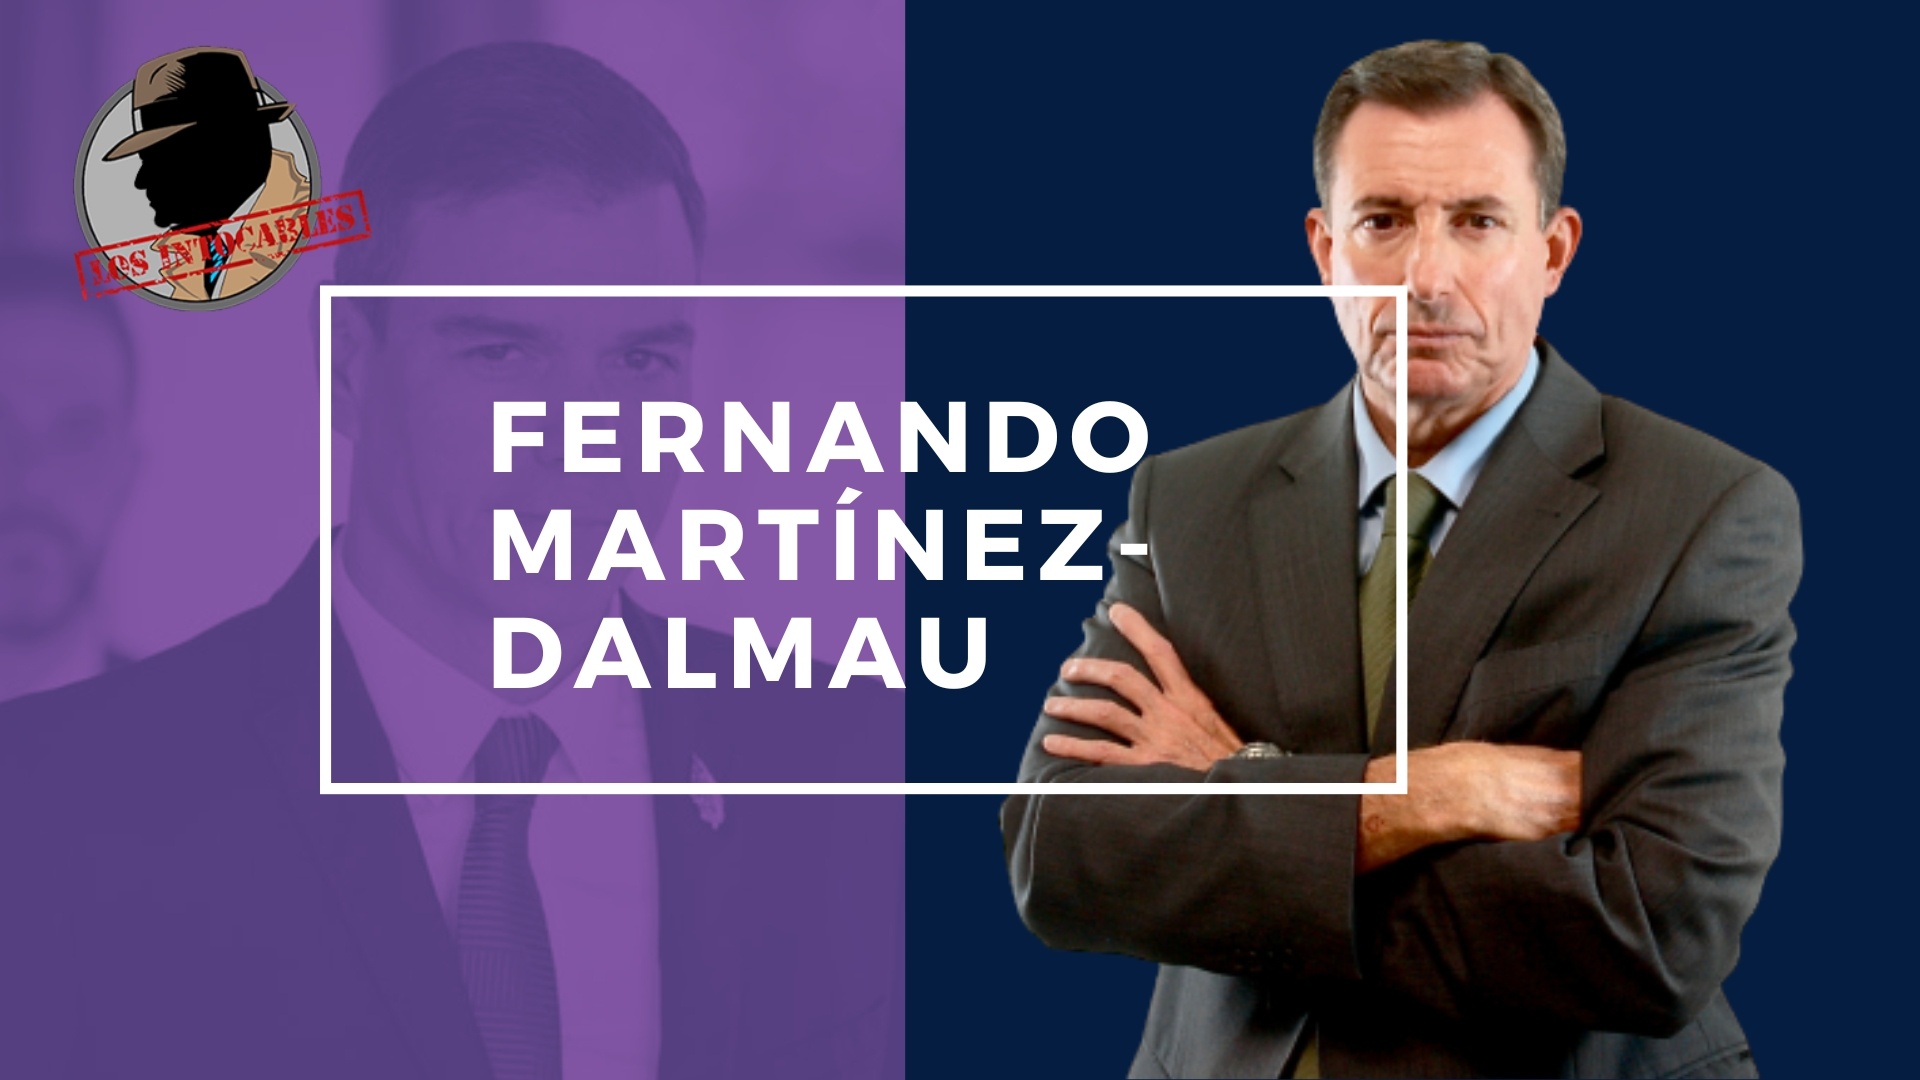 FERNANDO MARTÍNEZ-DALMAU: VOX TENDRÍA QUE HACER UNA MOCIÓN DE CENSURA DIARIA CONTRA SÁNCHEZ